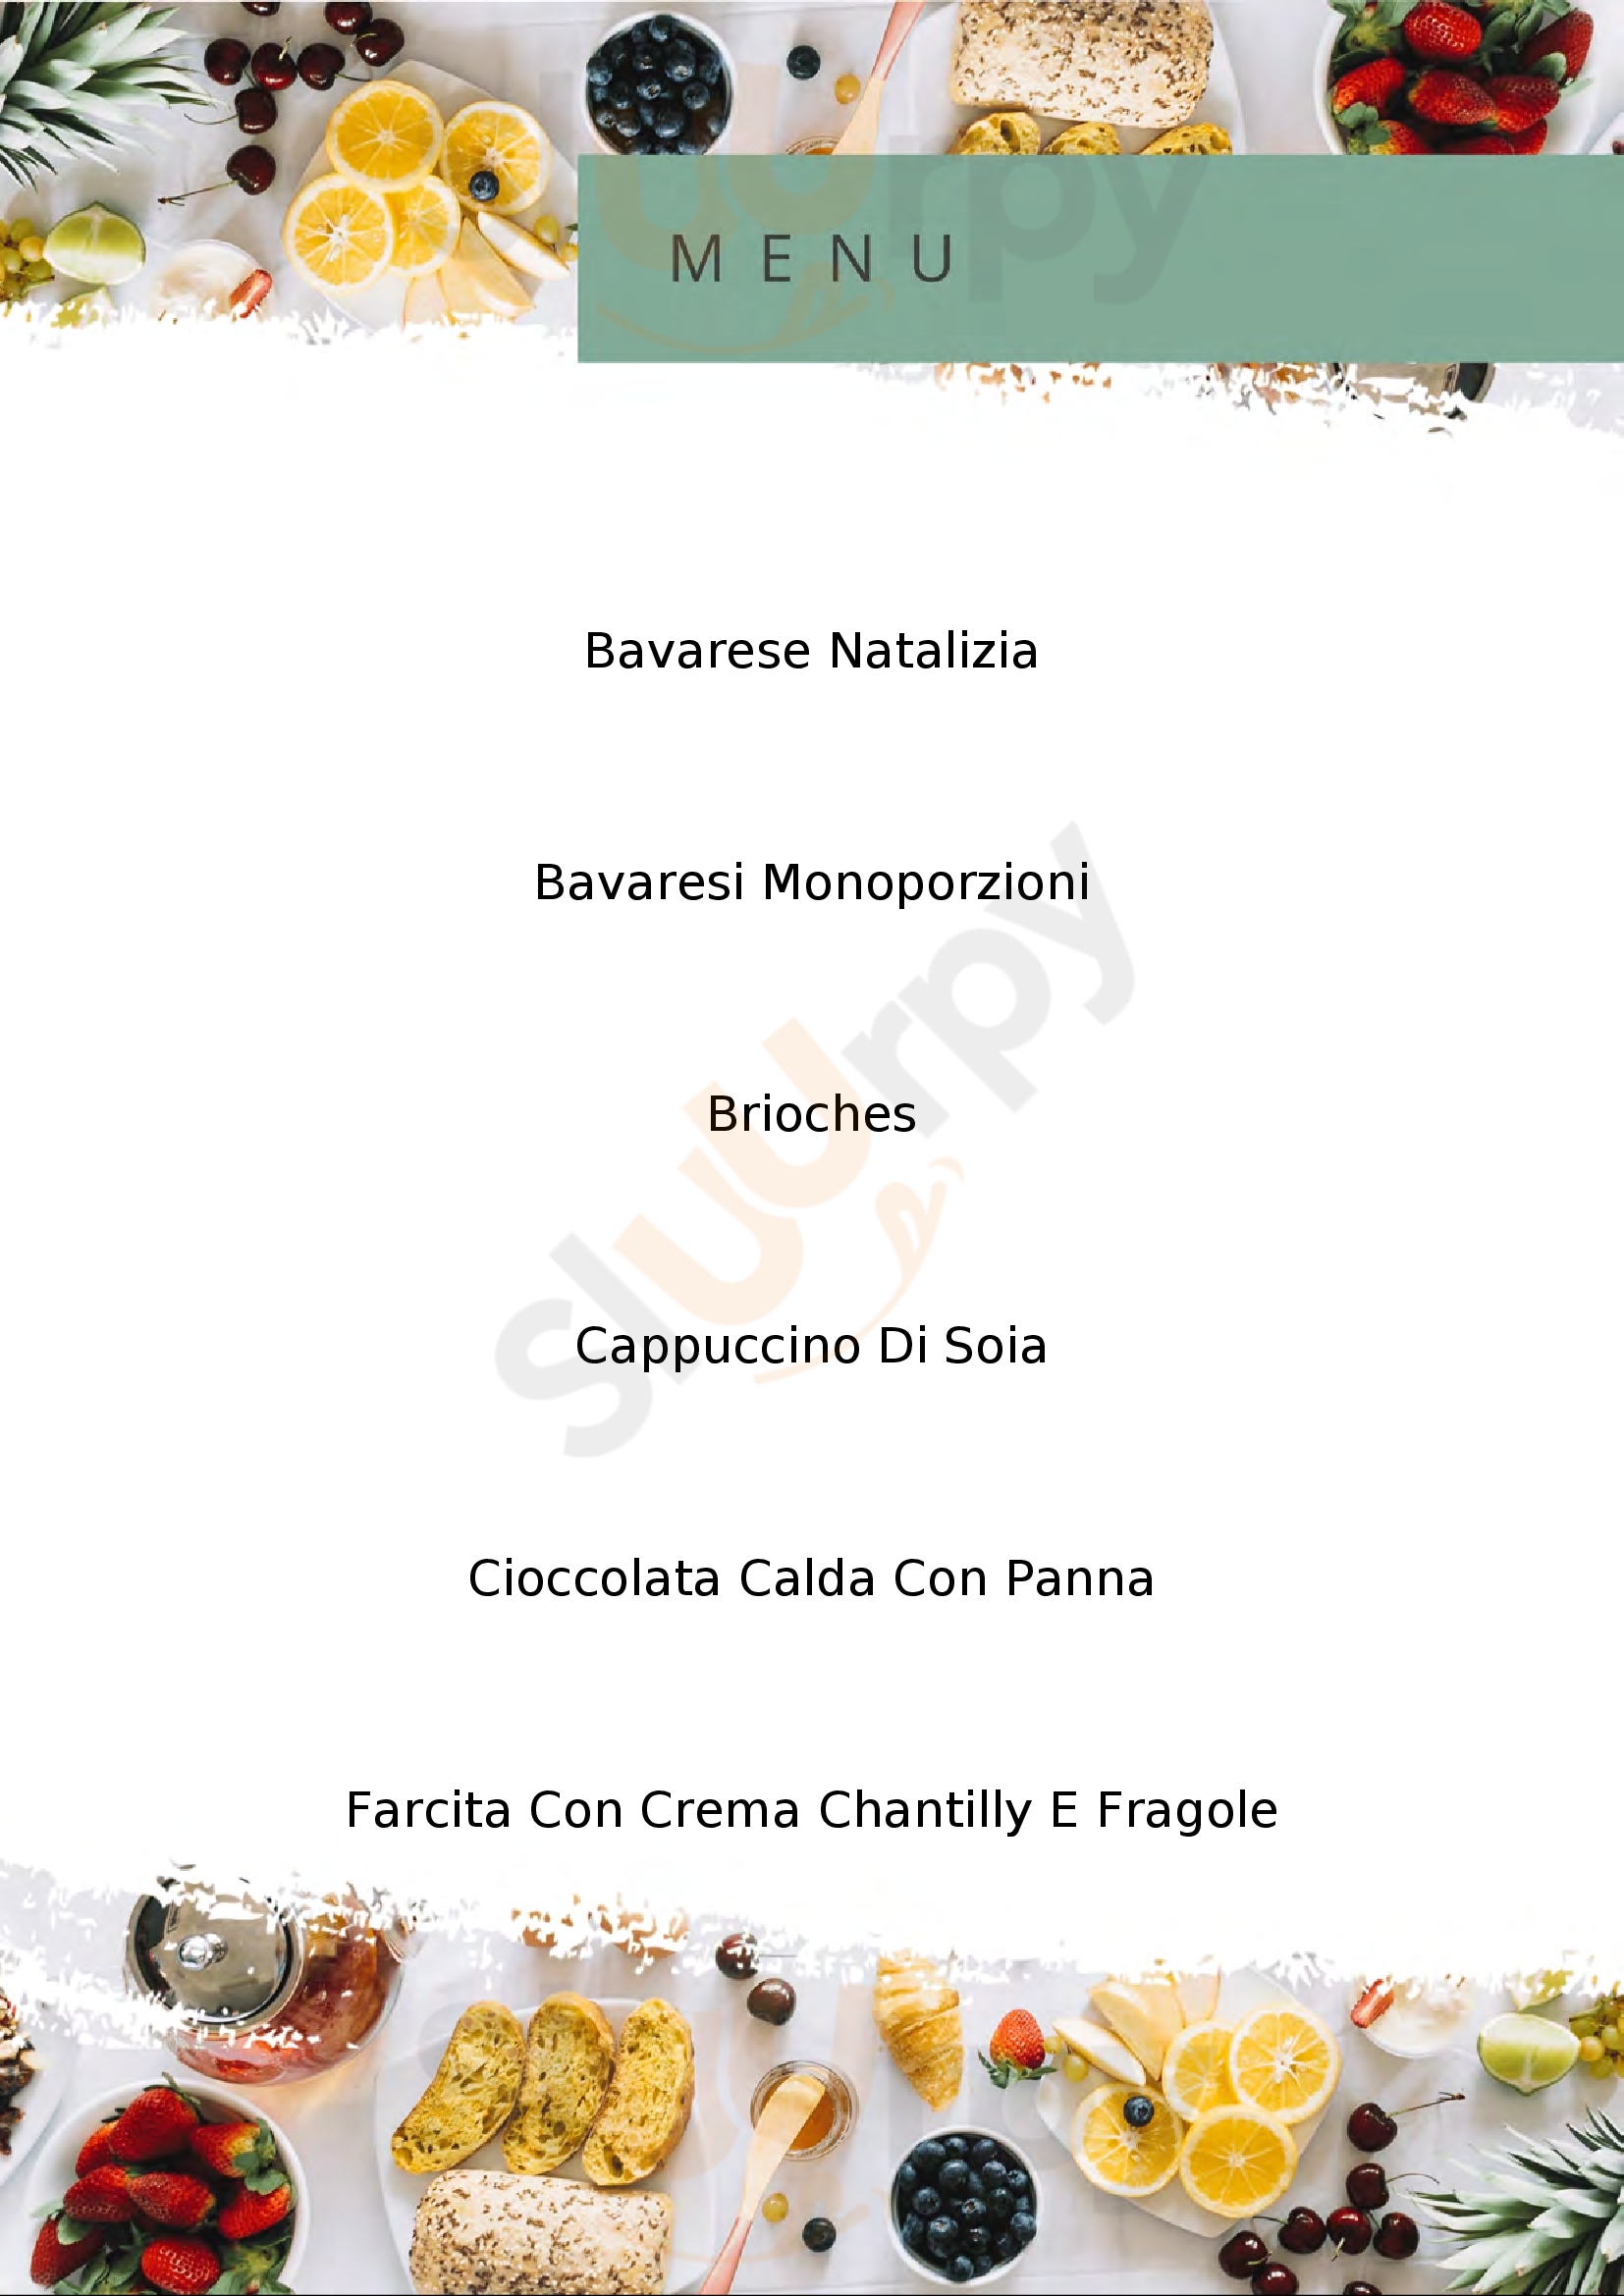 Pasticceria Caffetteria Bertoncin Chatillon menù 1 pagina